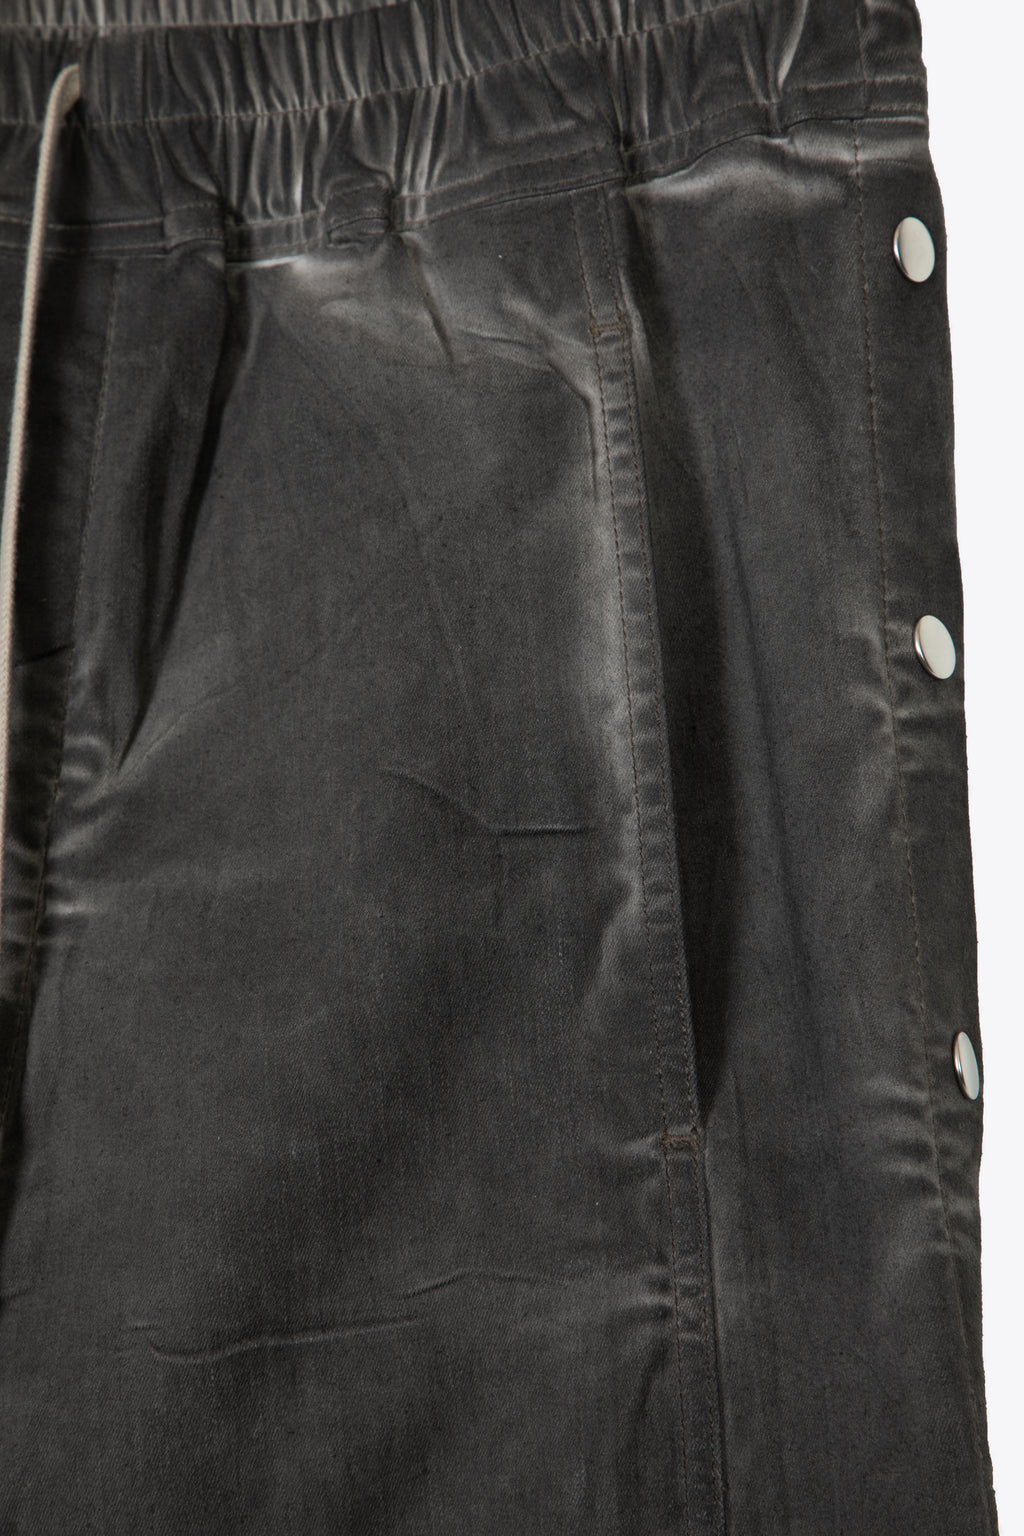 alt-image__Pantalone-in-cotone-cerato-grigio-scuro-con-bottoni-laterali---Pusher-Pants